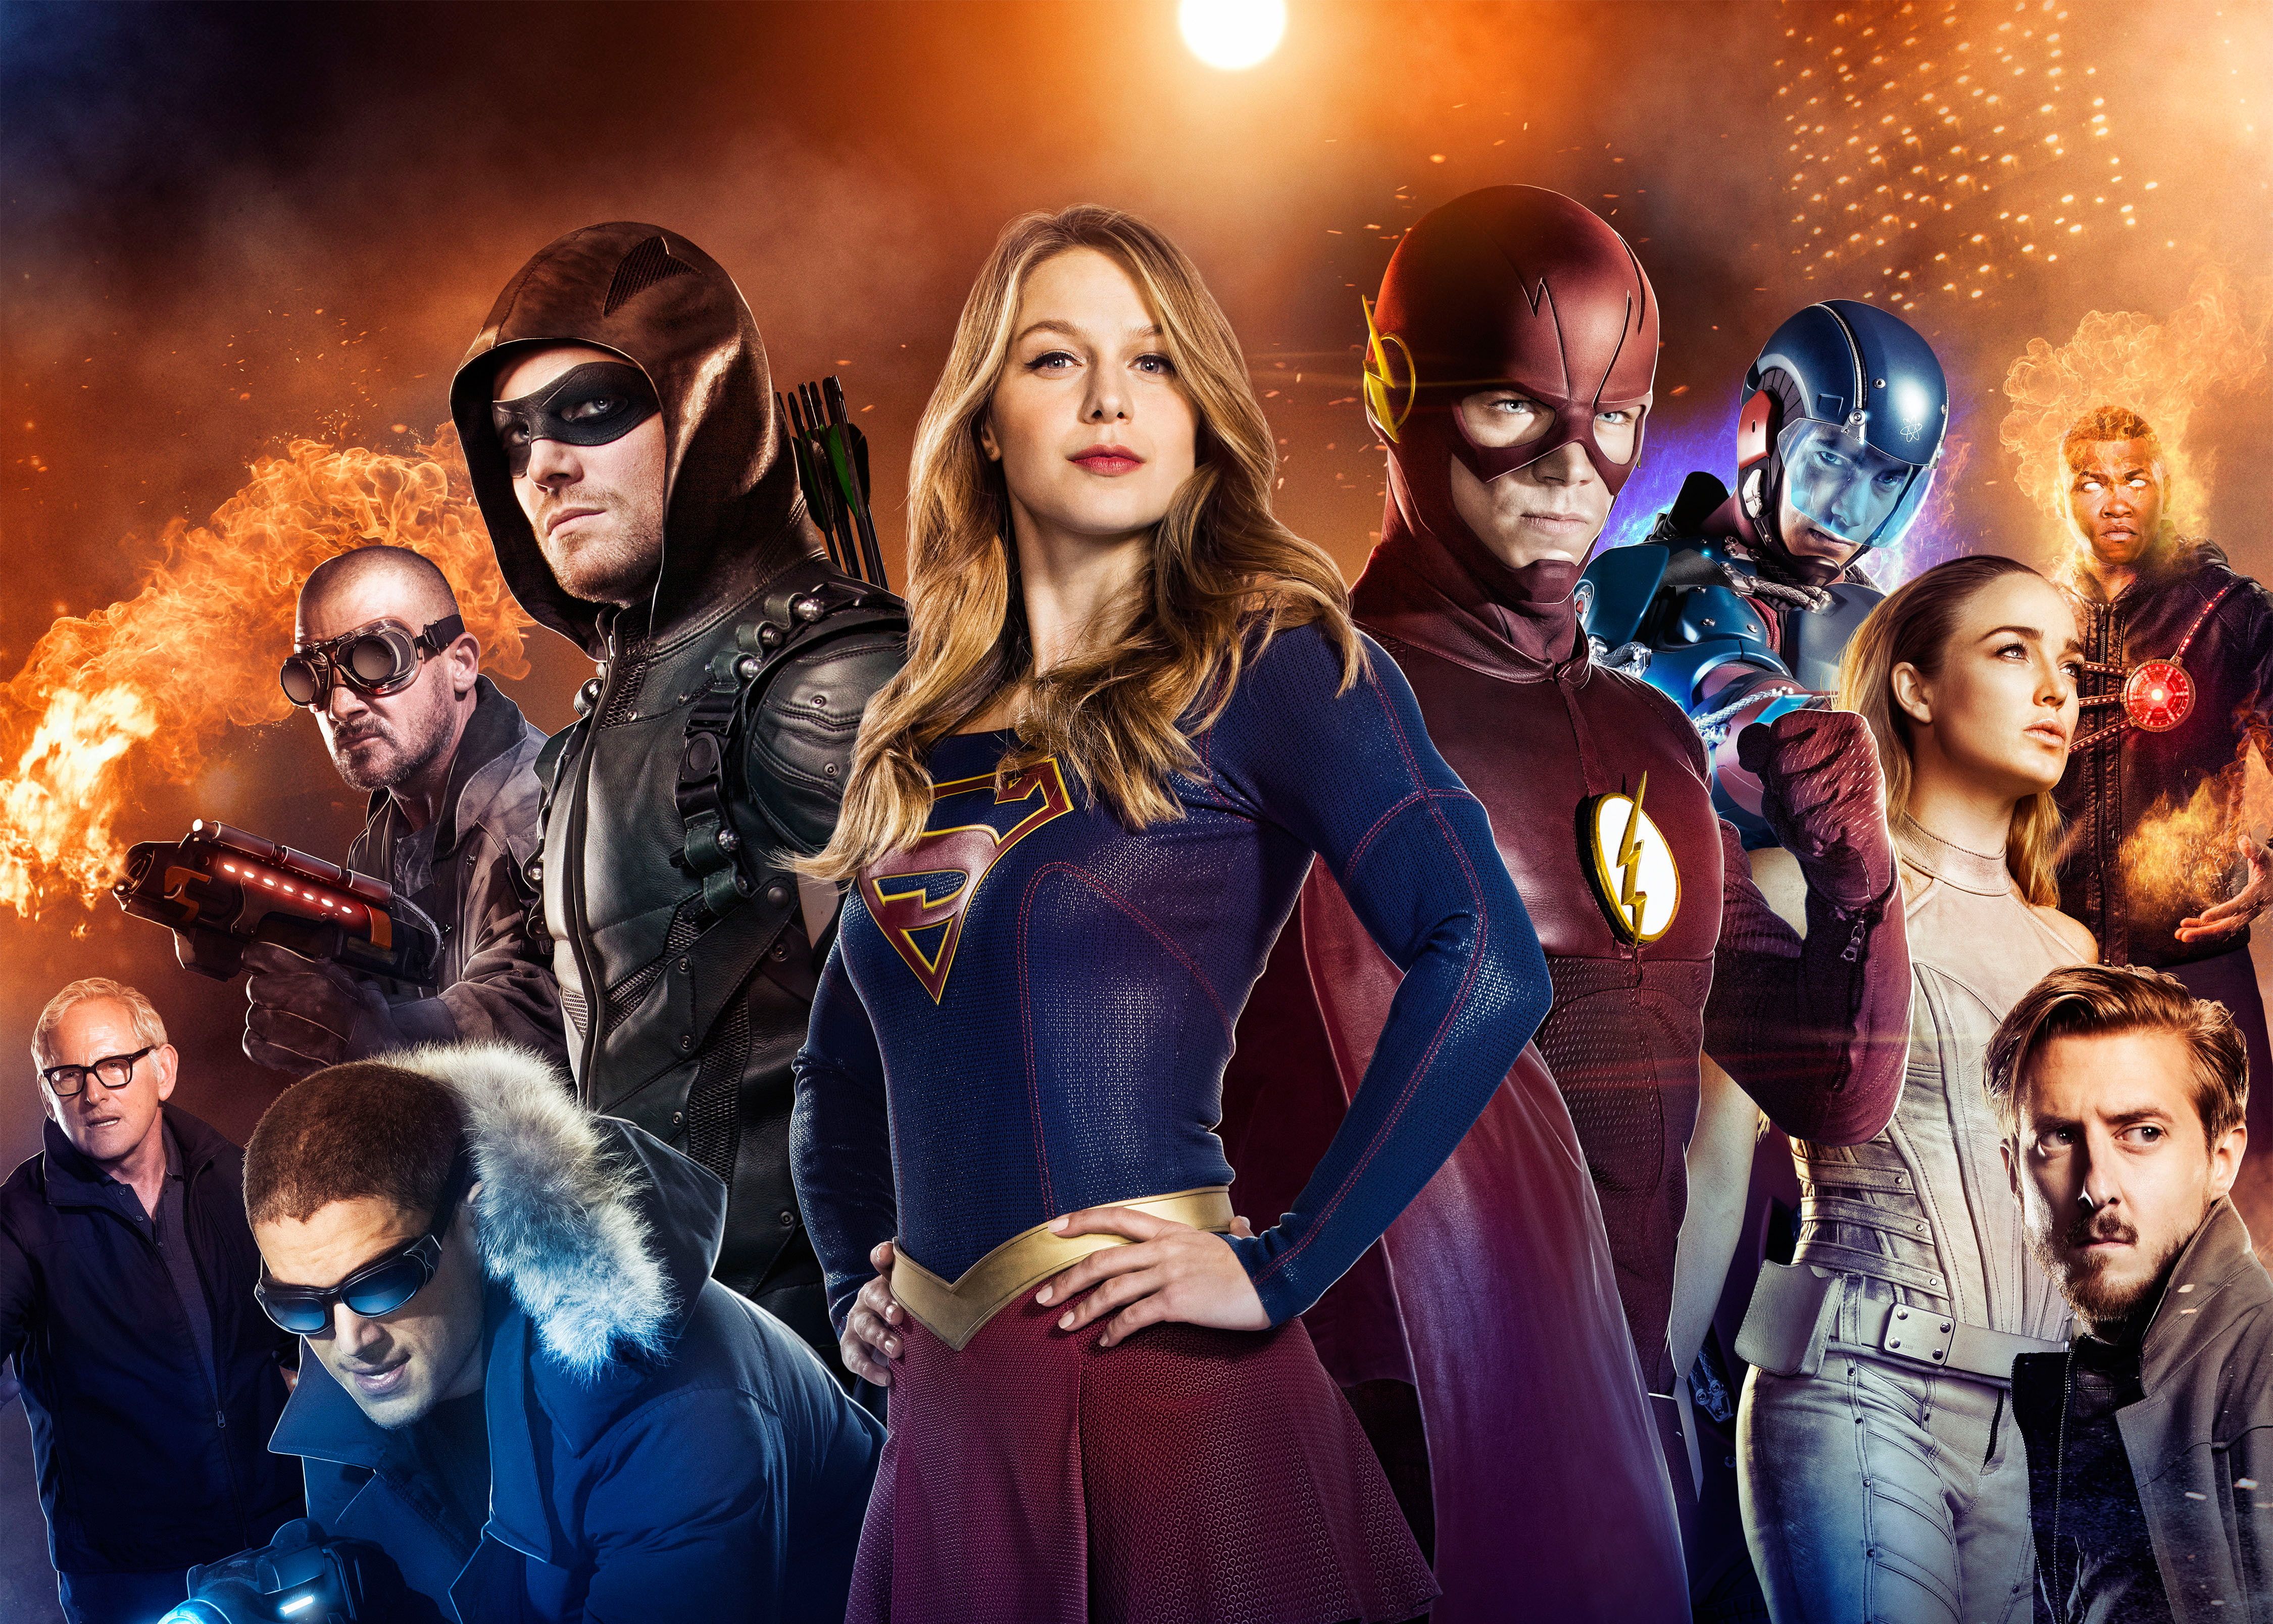 Supergirl DC Comics #Arrow K The Flash Legends of Tomorrow K #wallpaper #hdwallpaper #desktop. Supergirl, Supergirl and flash, Arrow tv series